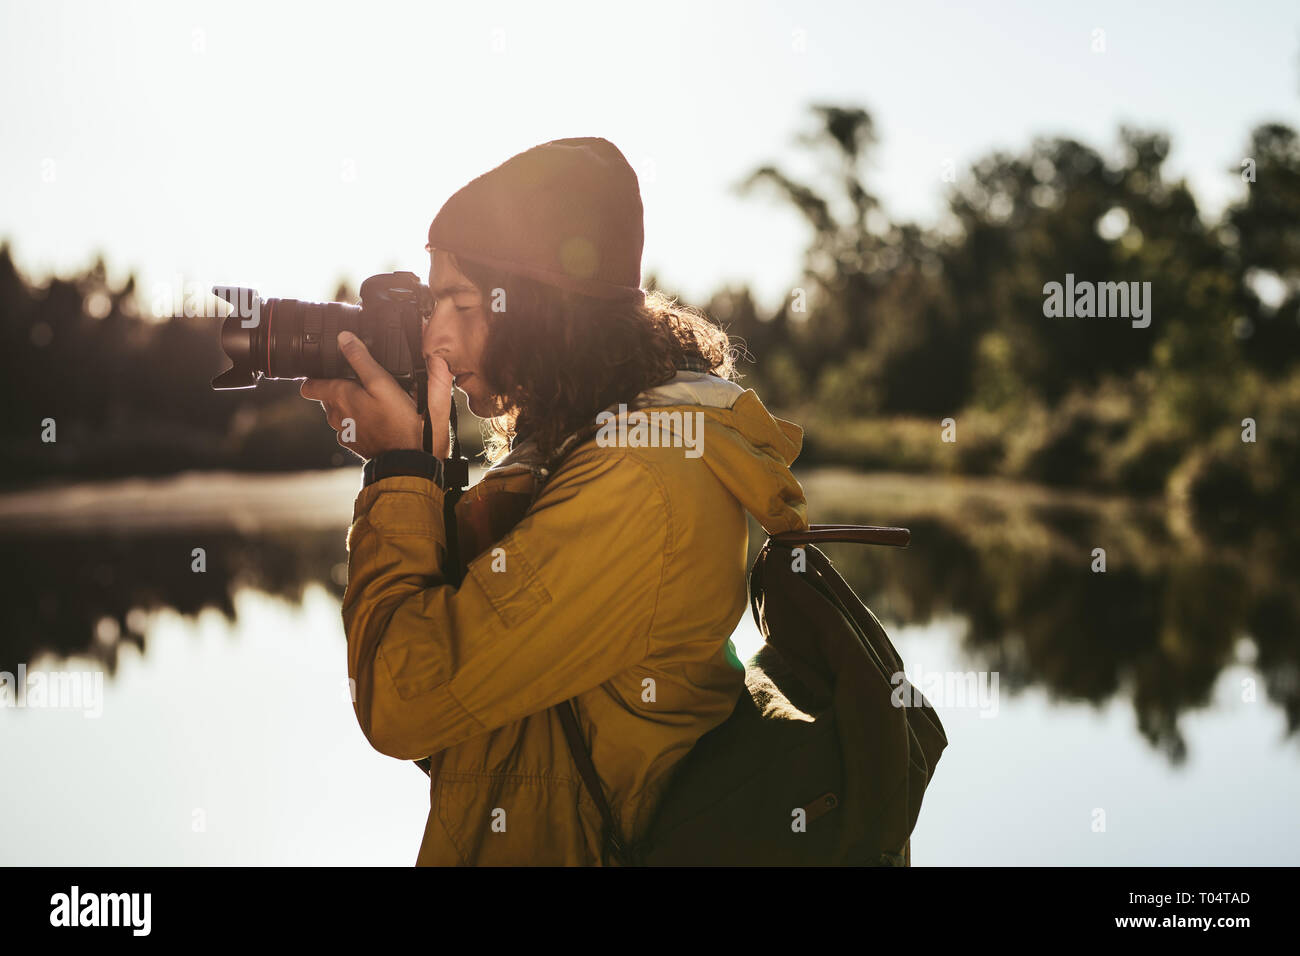 Turistica prendendo una foto con una fotocamera reflex digitale. Vista laterale di un viaggiatore alla ricerca nella sua fotocamera digitale per scattare una foto. Foto Stock